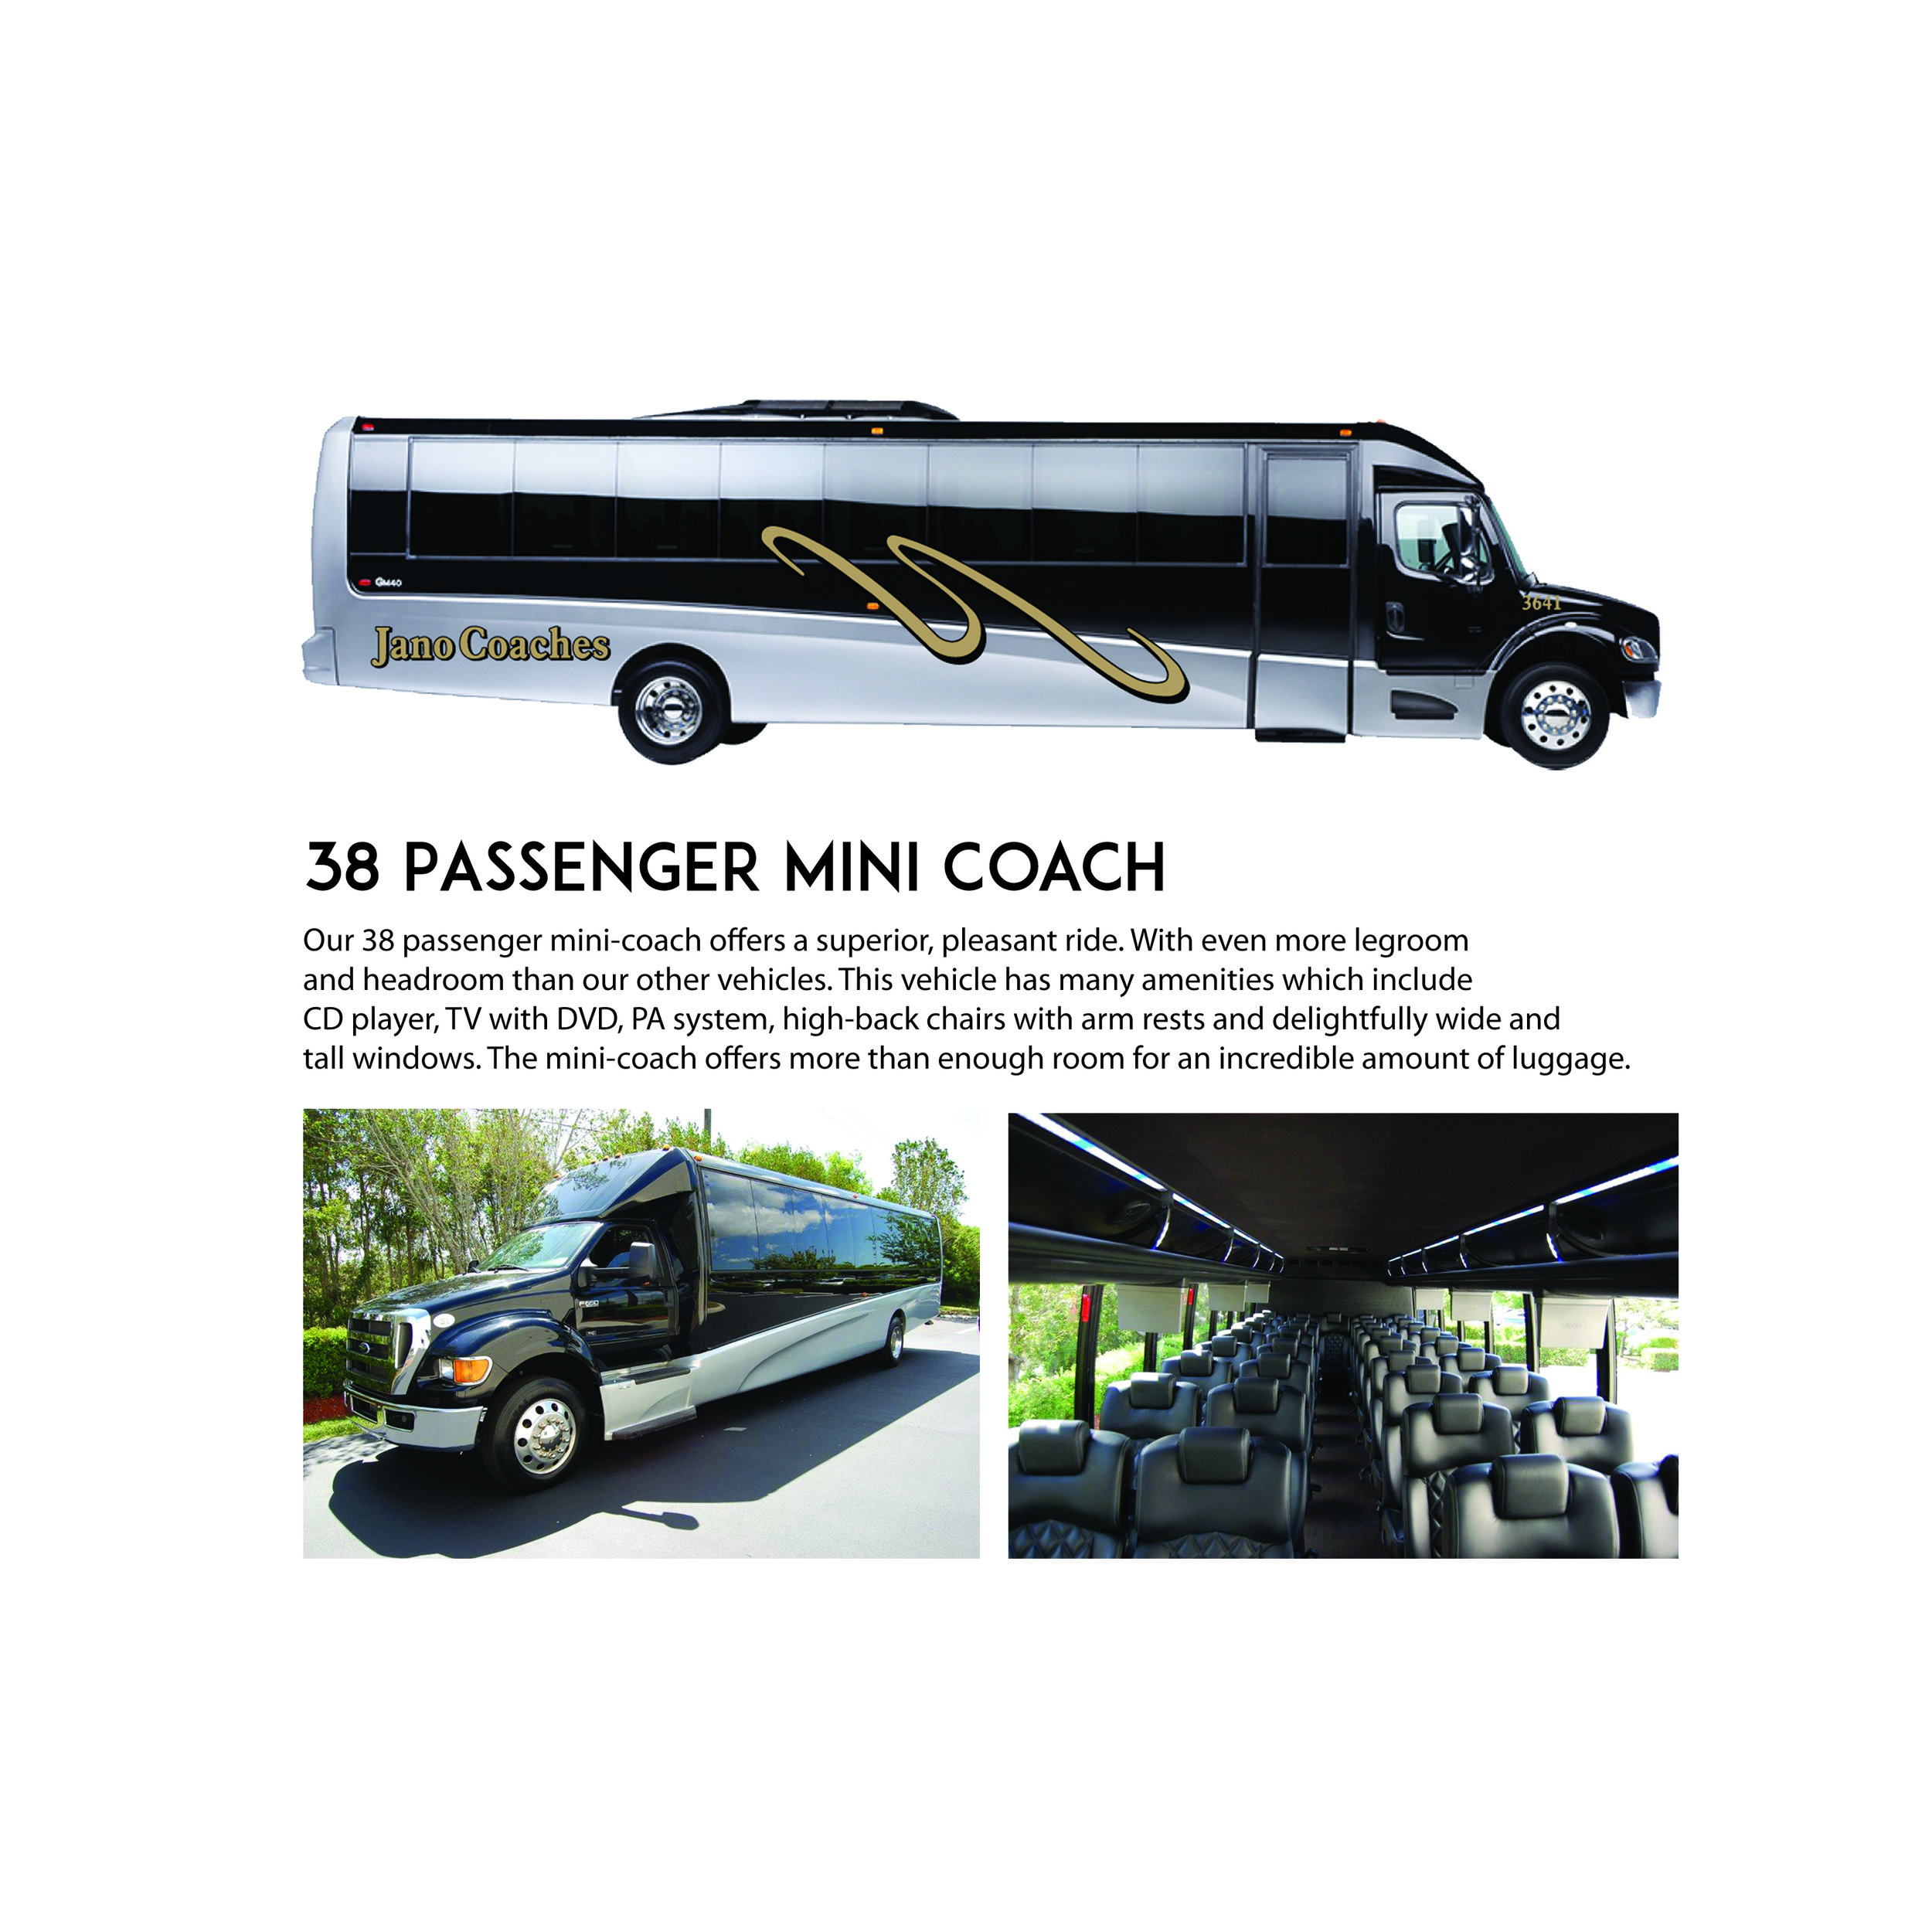 38 pass minicoach fleet page `.jpg